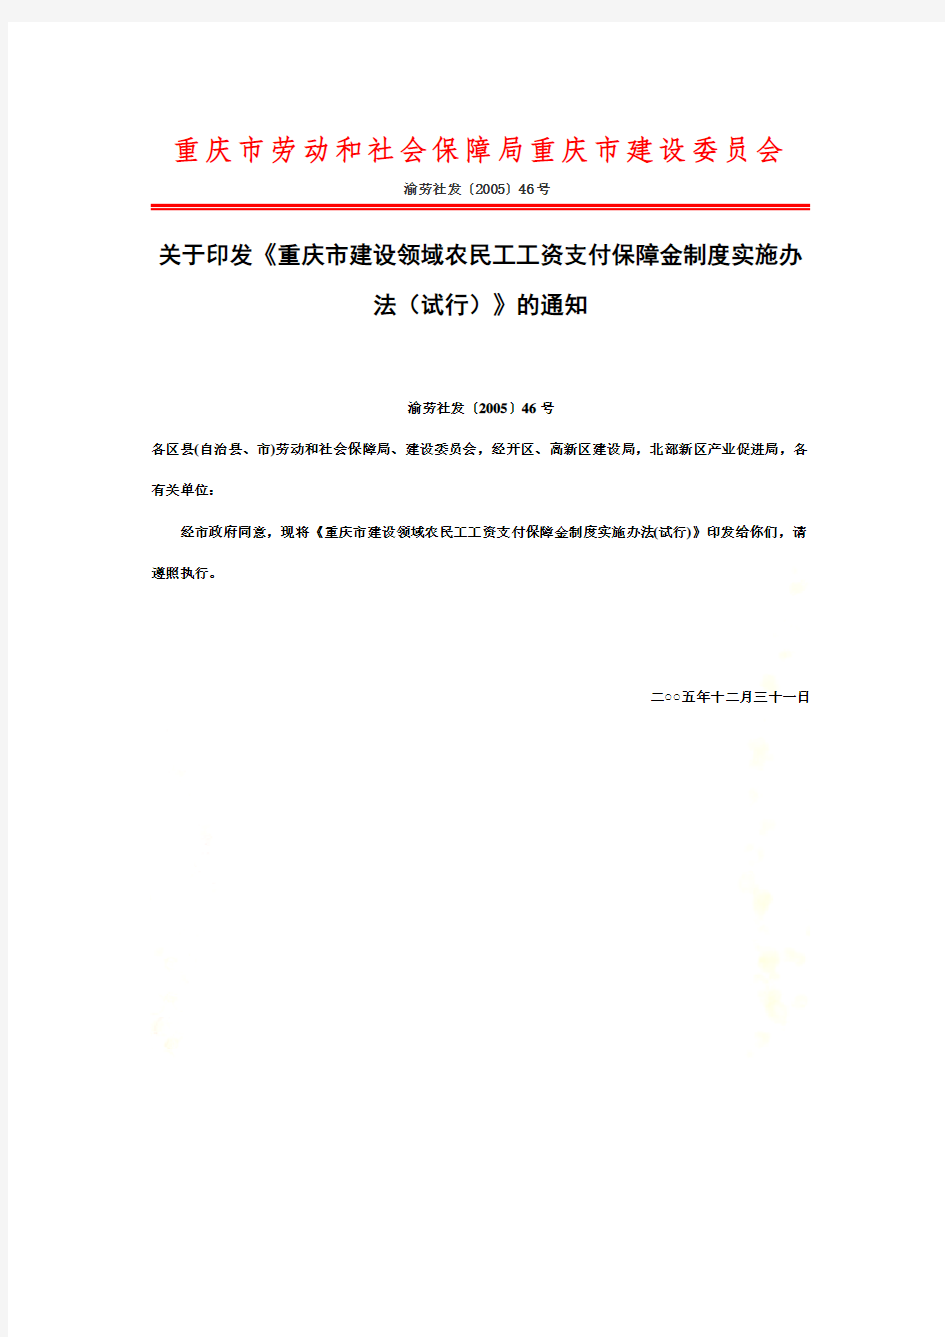 重庆市建设领域农民工工资支付保障金制度实施办法(试行)